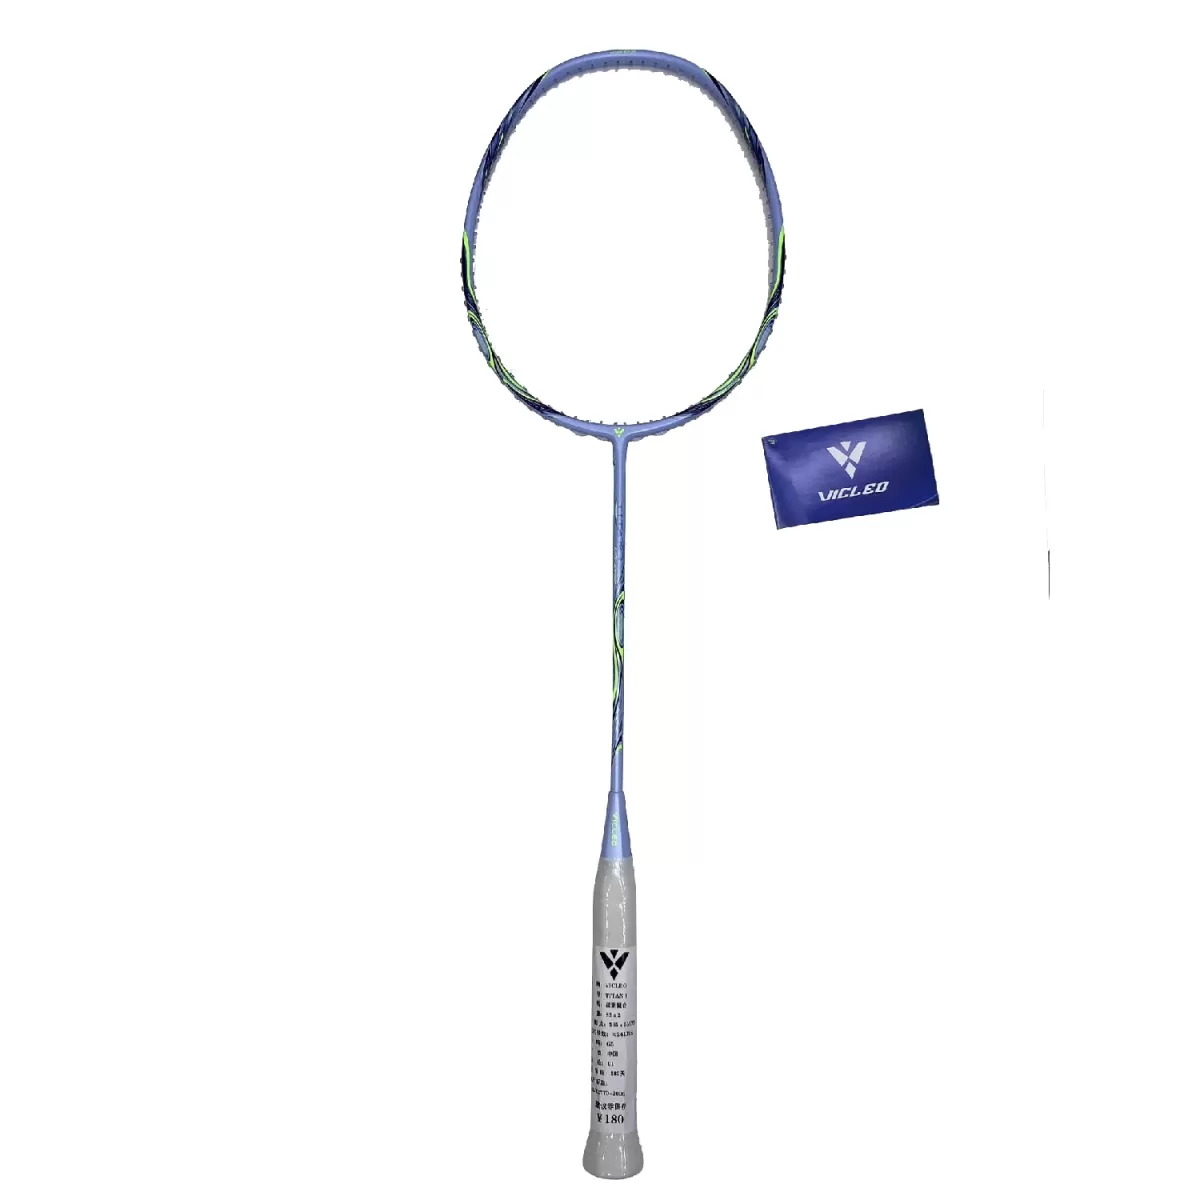 Một số loại vợt cầu lông giá rẻ chính hãng thay vợt cầu lông Haotian - Vợt Cầu Lông Vicleo Titan 1 Chính Hãng